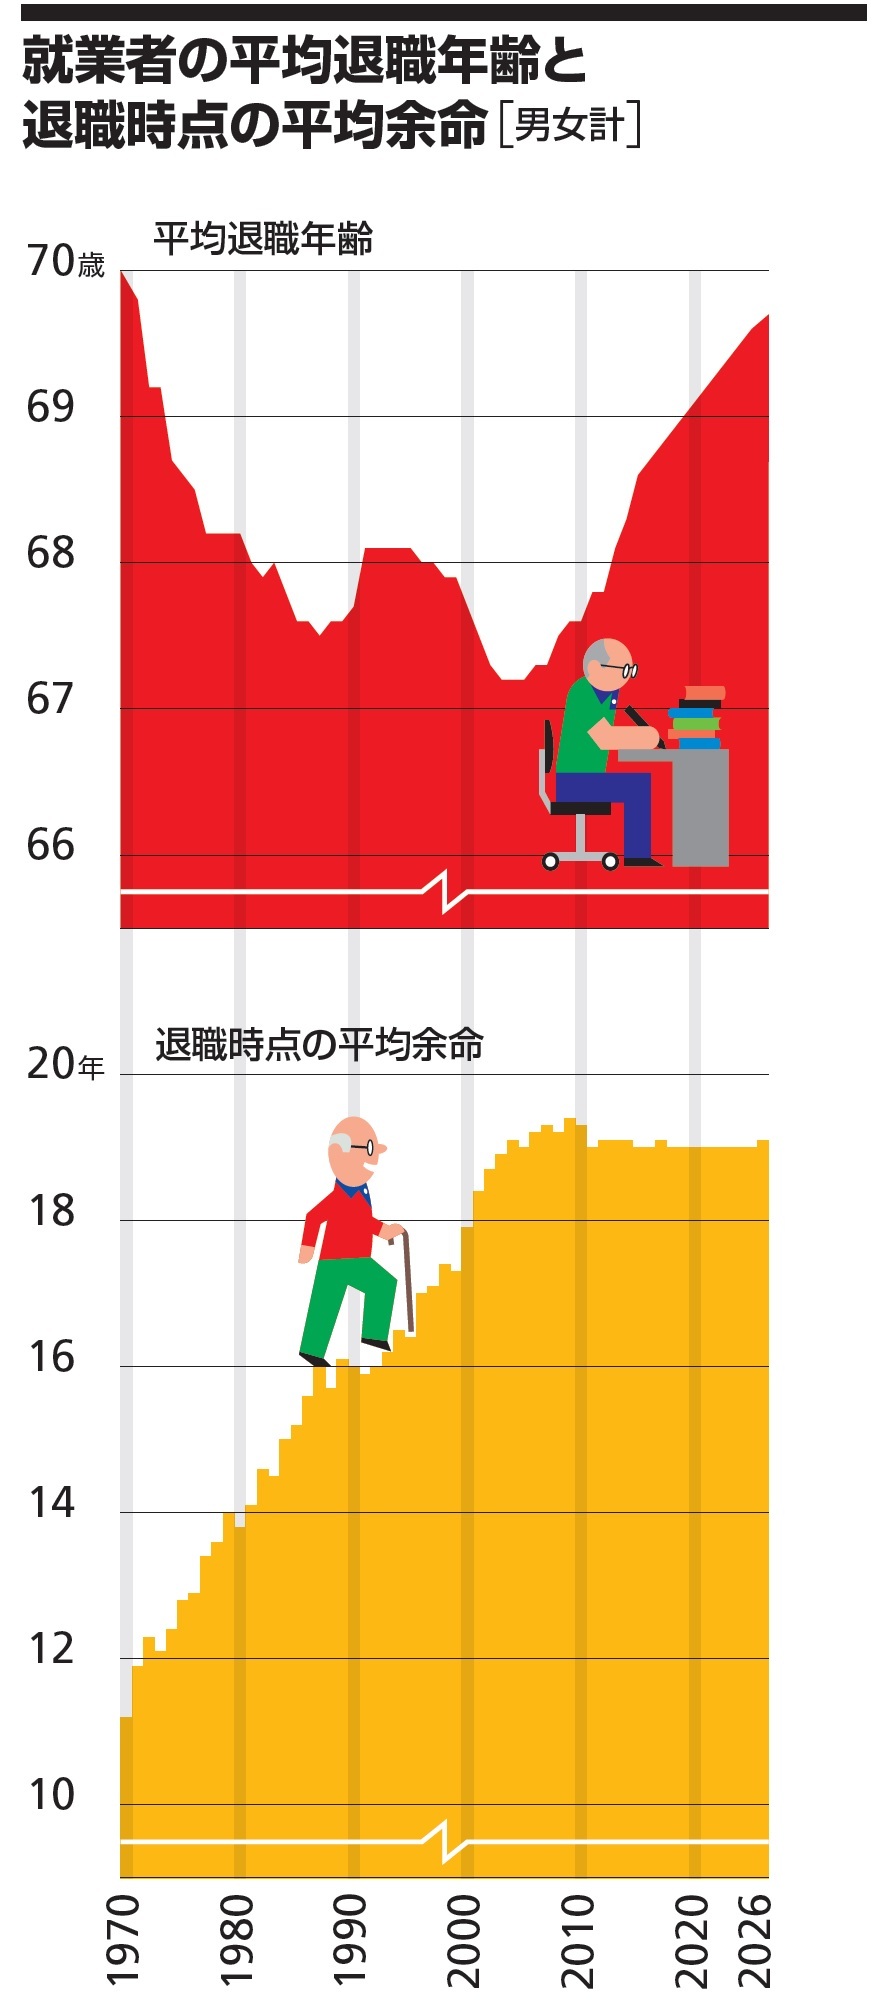 就業者の平均退職年齢と退職時点の平均余命